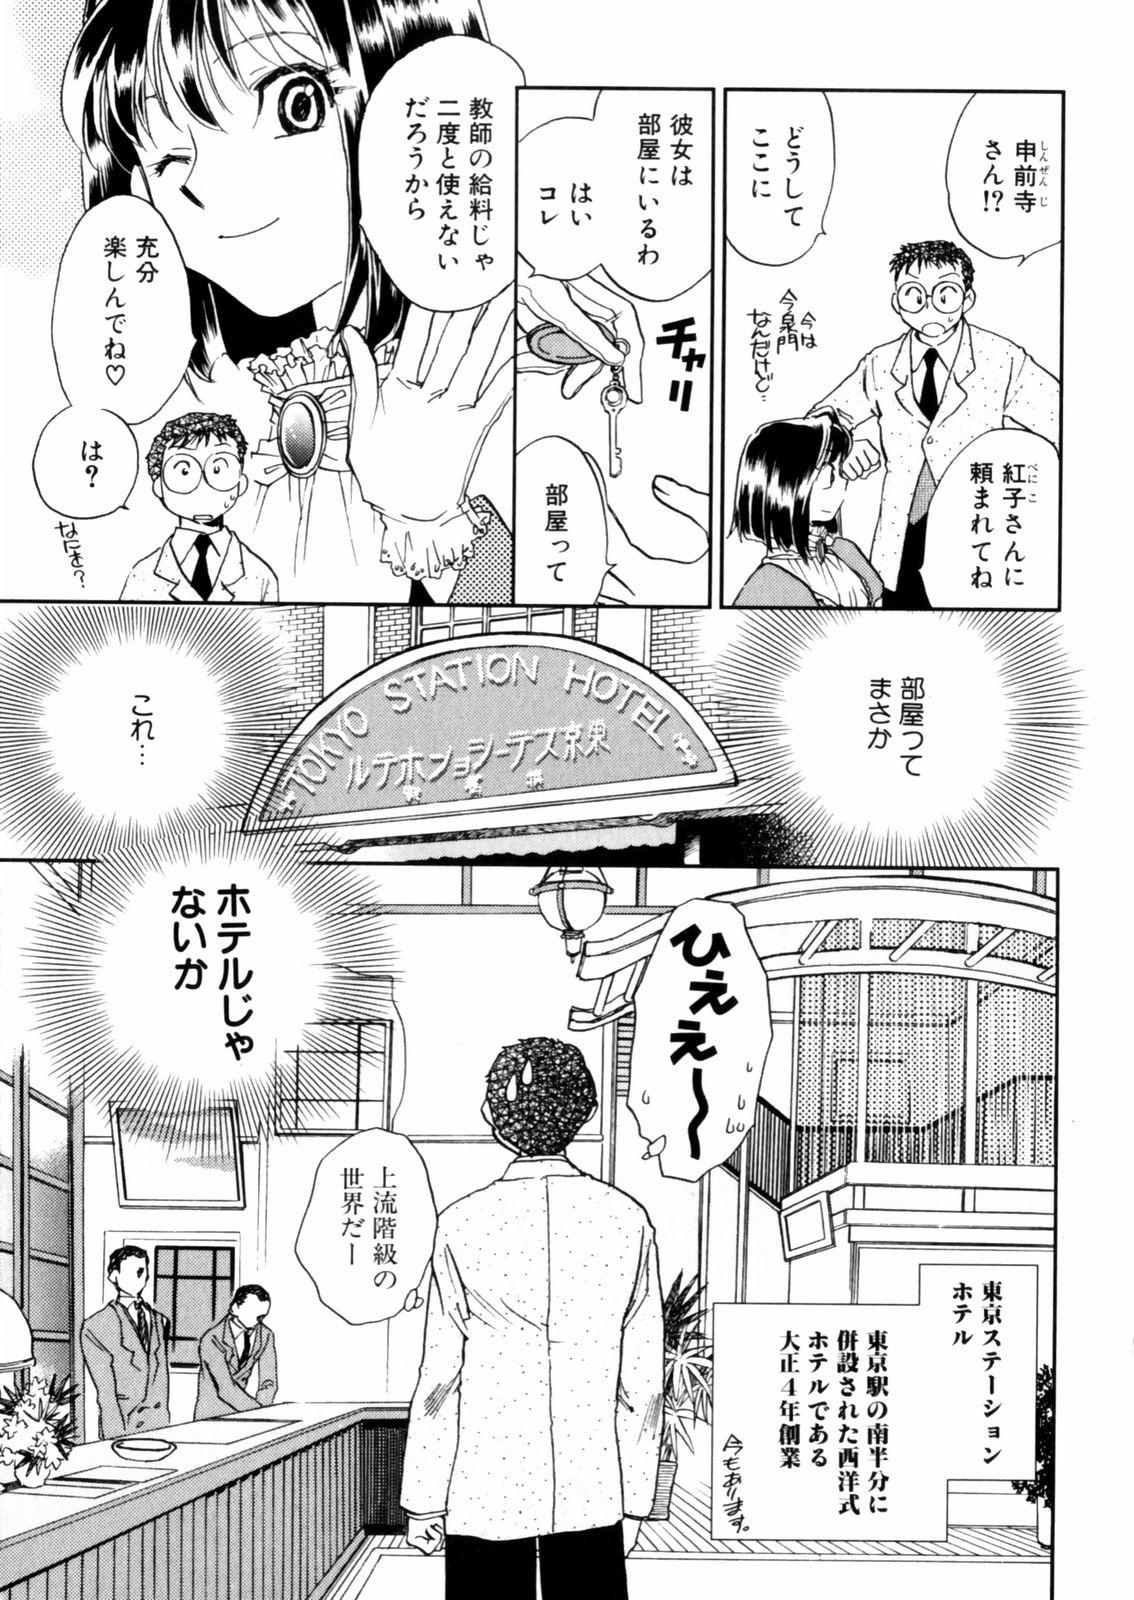 [Okano Ahiru] Hanasake ! Otome Juku (Otome Private Tutoring School) Vol.2 88